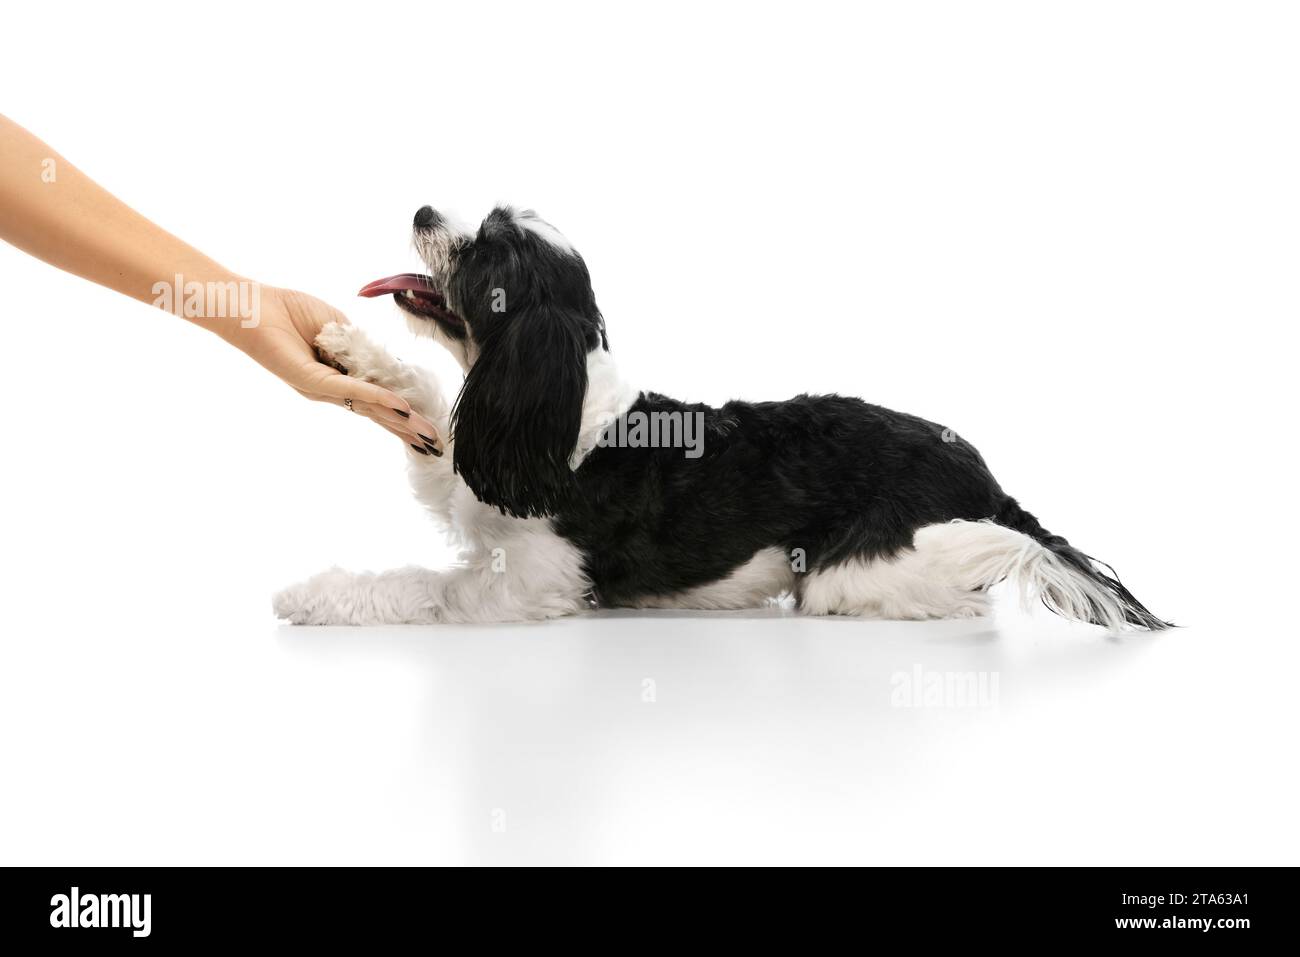 Der reinrassige Hund, der schwarz-weiße Shi-tzu-Welpe, folgt eindeutig den Anweisungen des Besitzers, gebt die Pfote vor weißem Studiohintergrund. Stockfoto